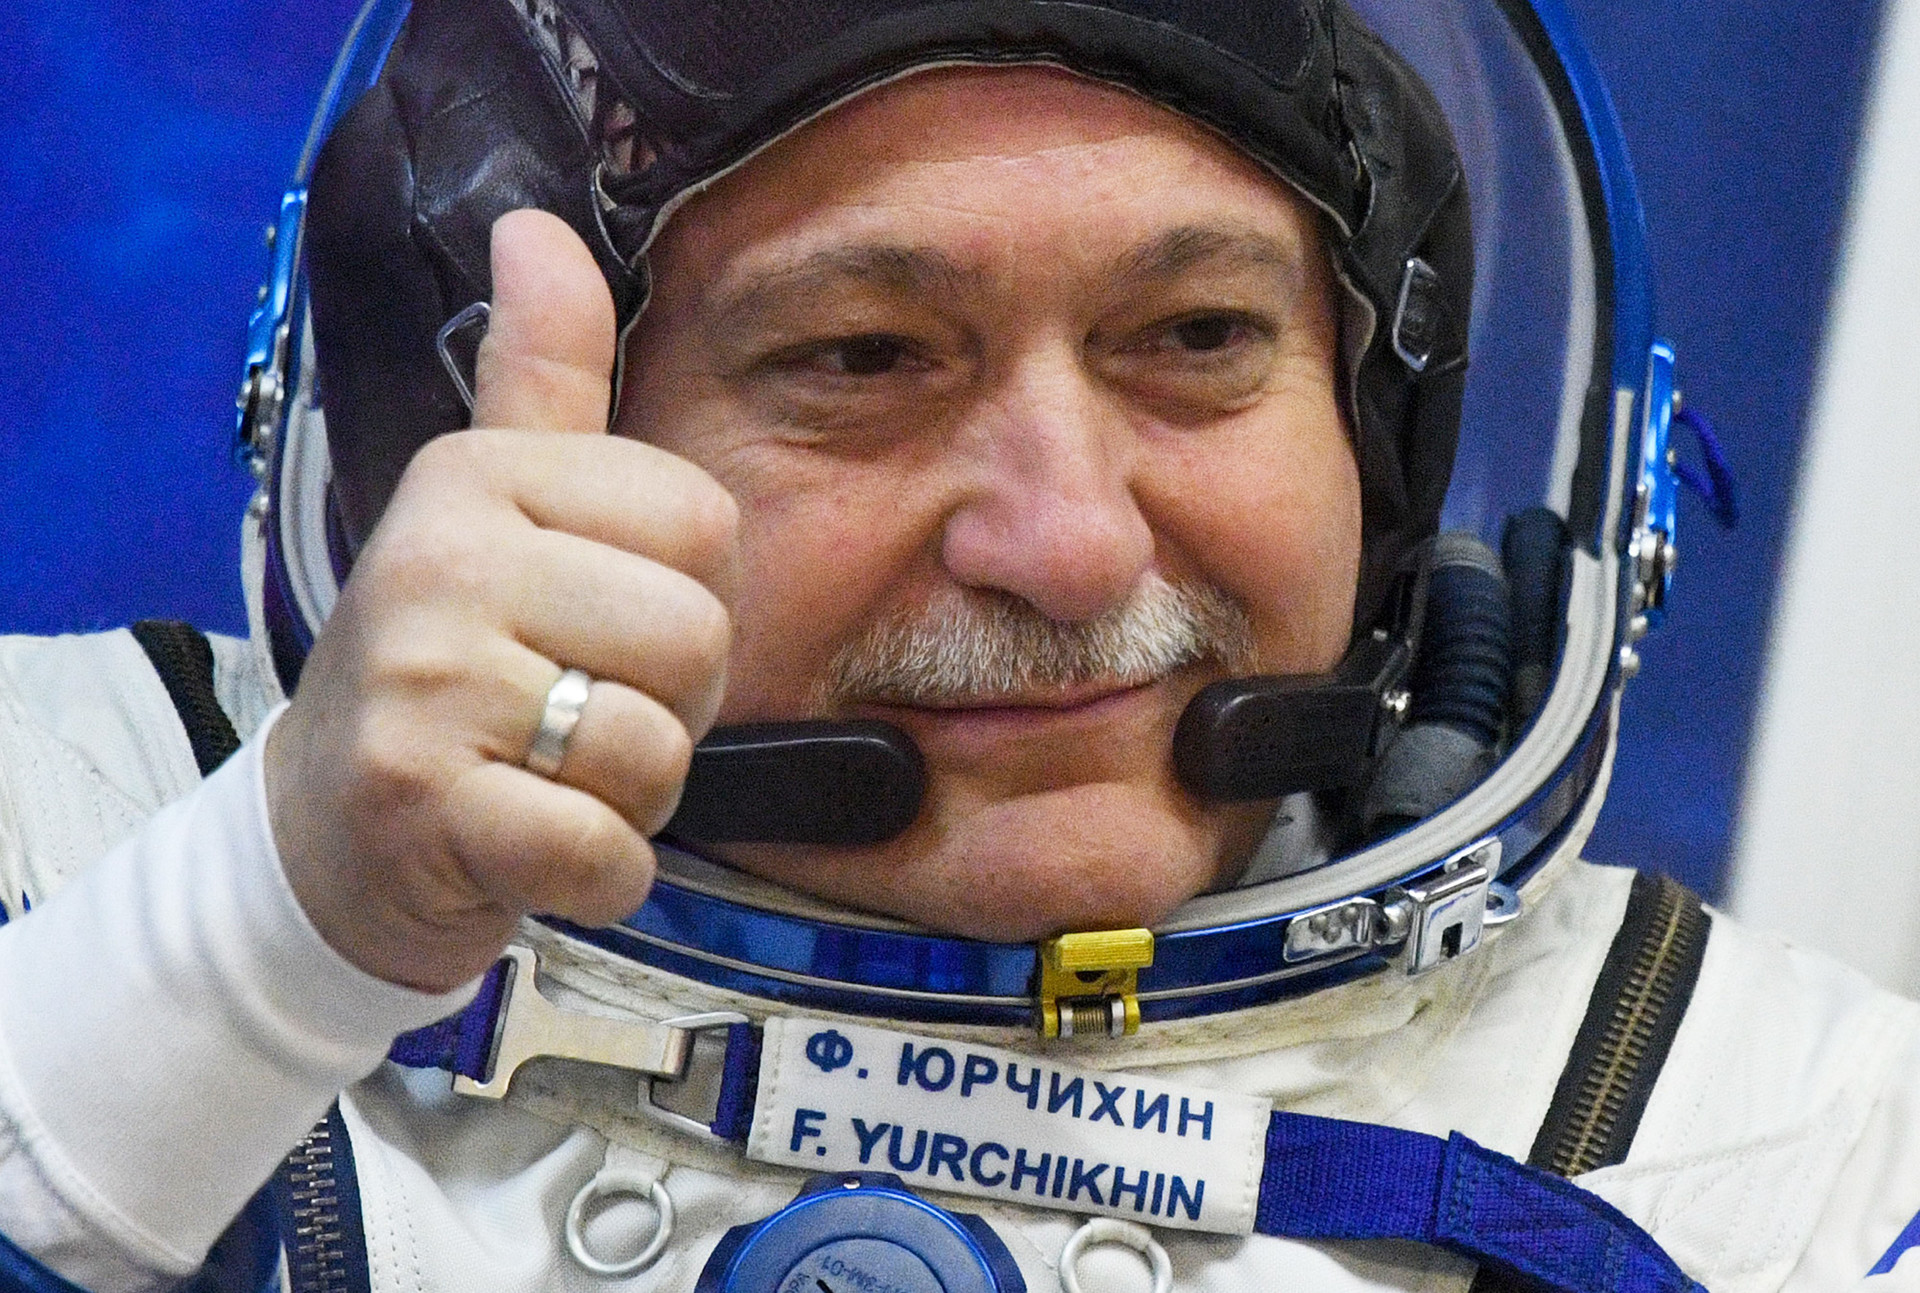 Kozmonavt Fjodor Jurčihin pred vzletom rakete, april 2017